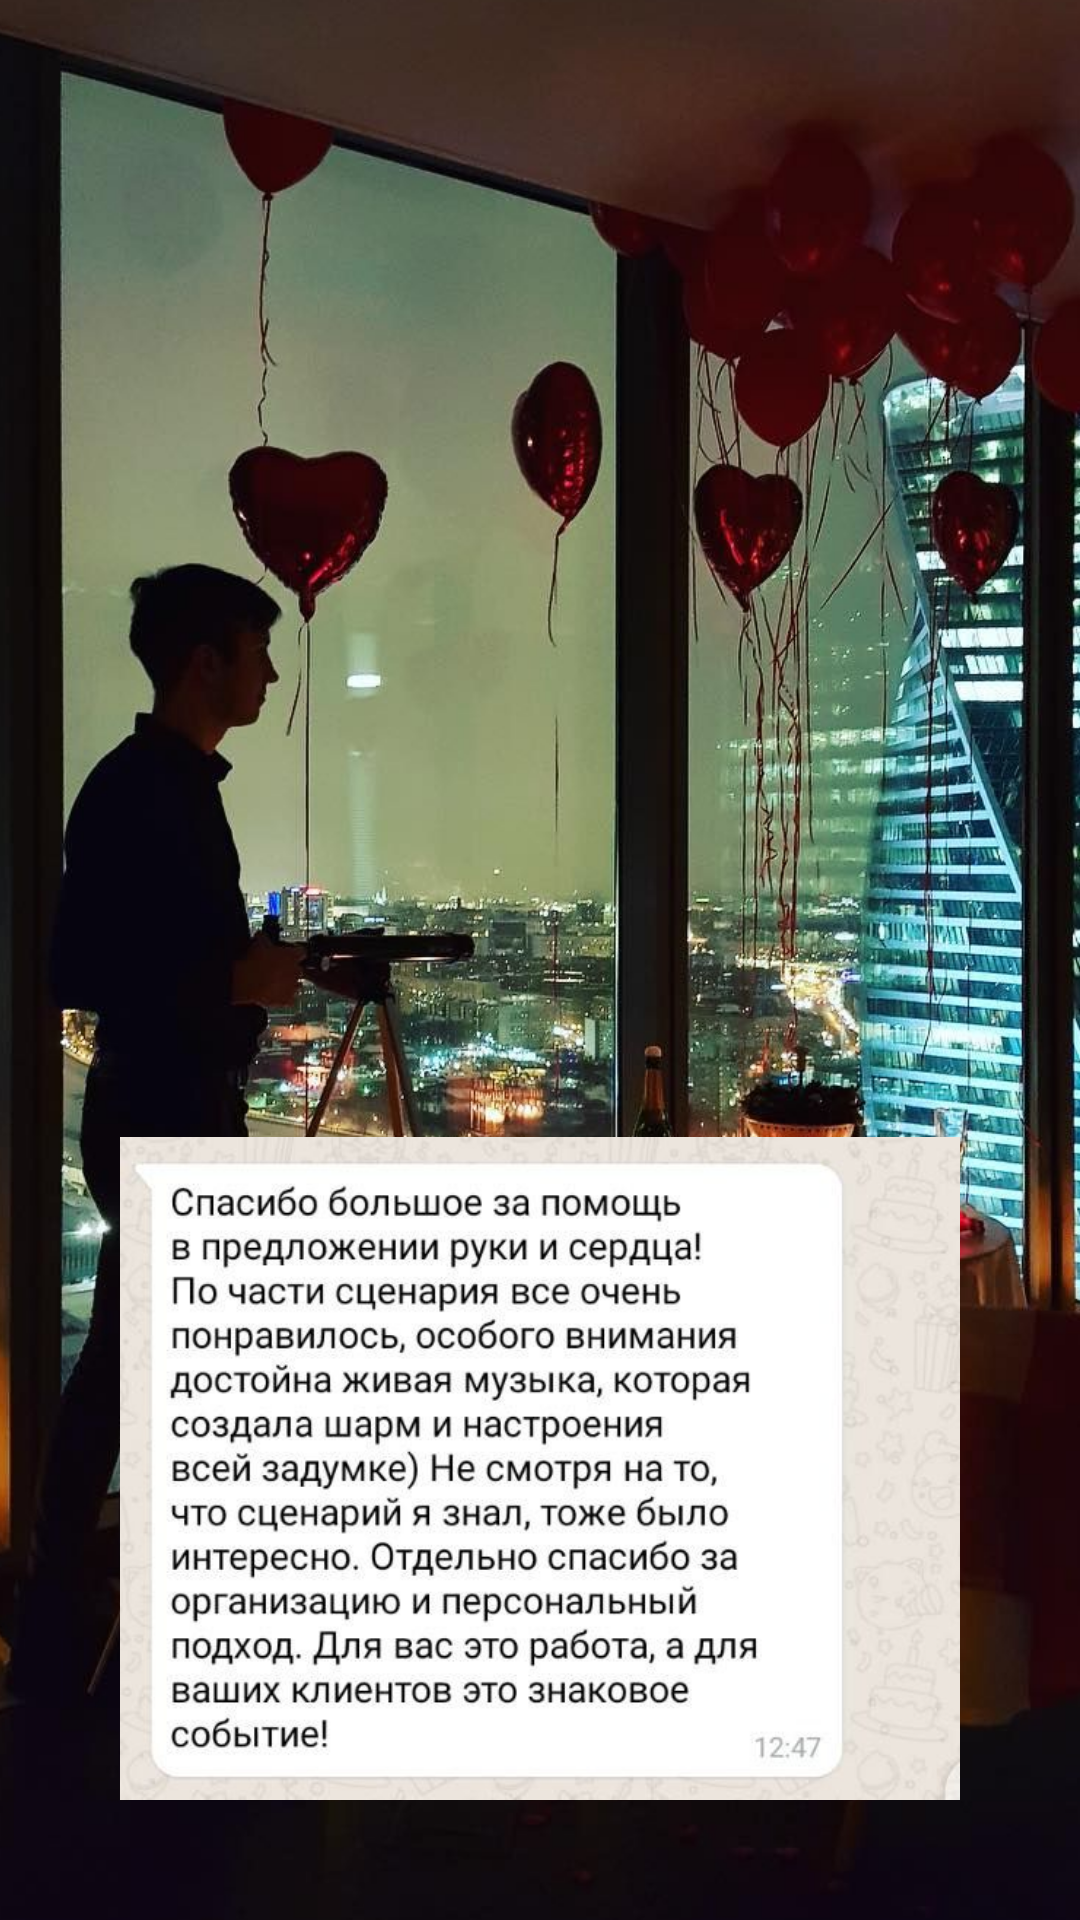 Организация предложения руки и сердца в Омске
от компании Pandaevent